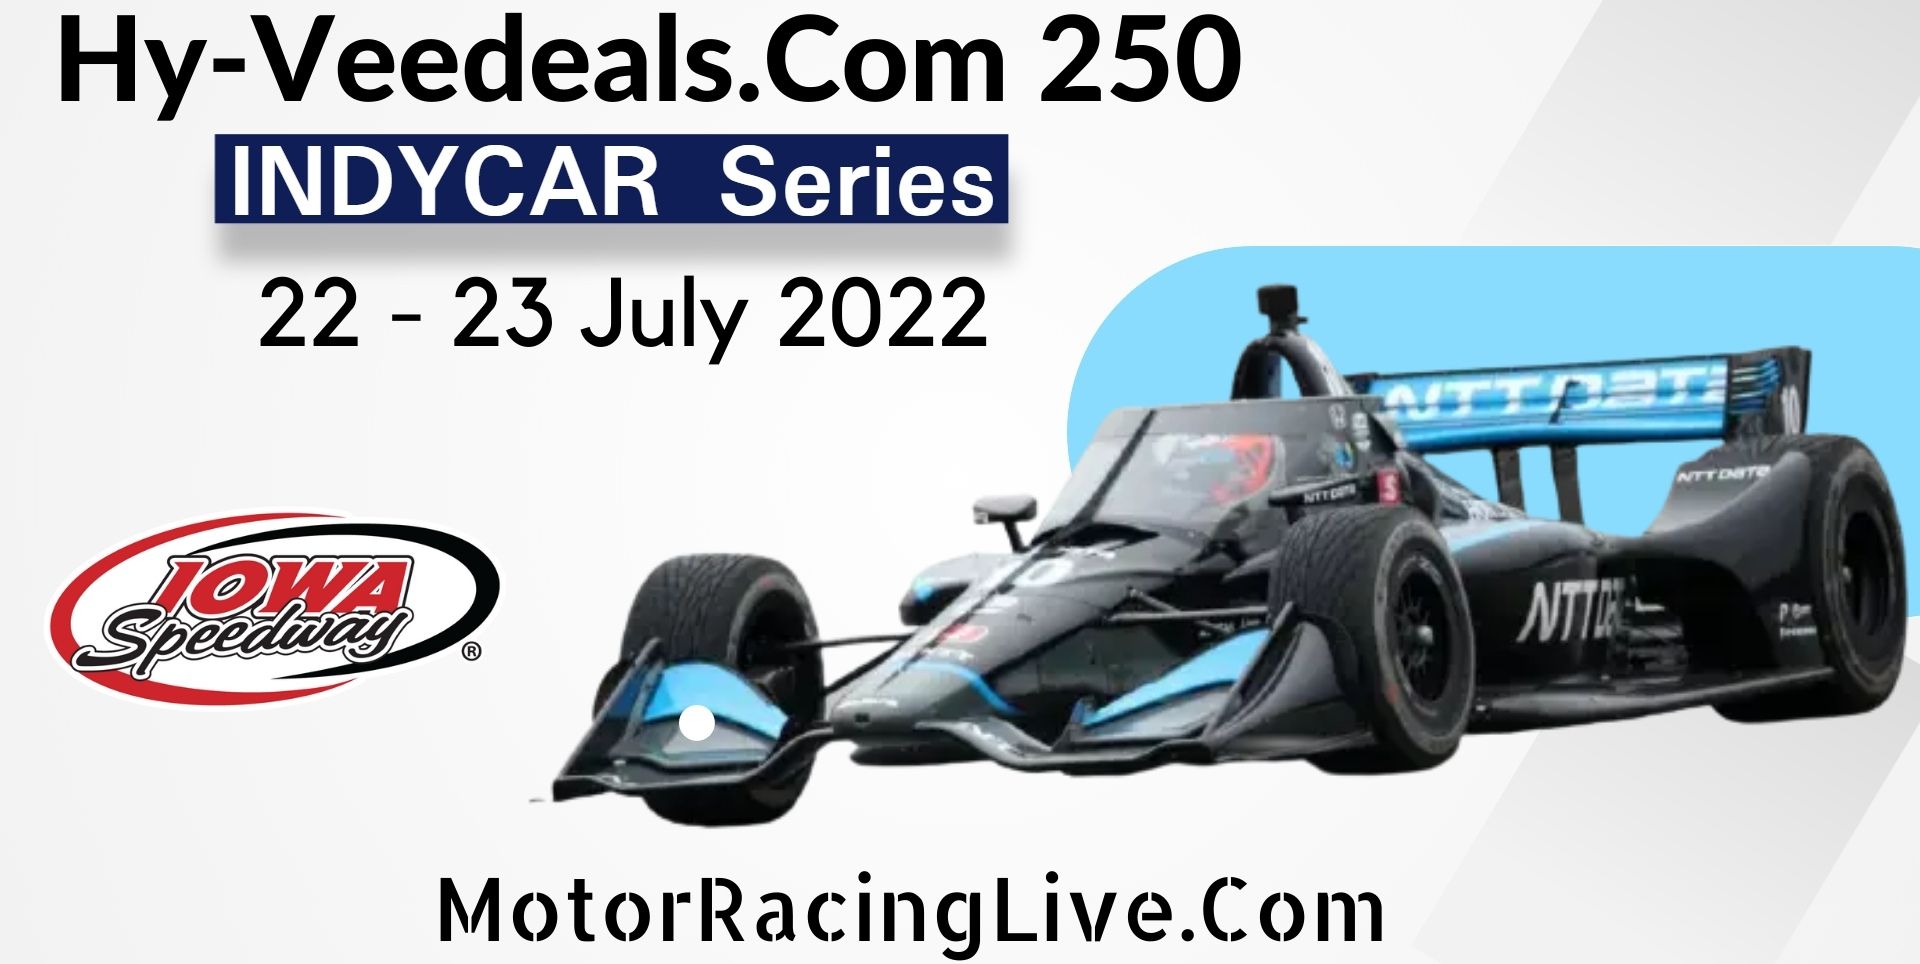 Hy-Veedeals.Com 250 Live Stream 2022 | Indycar